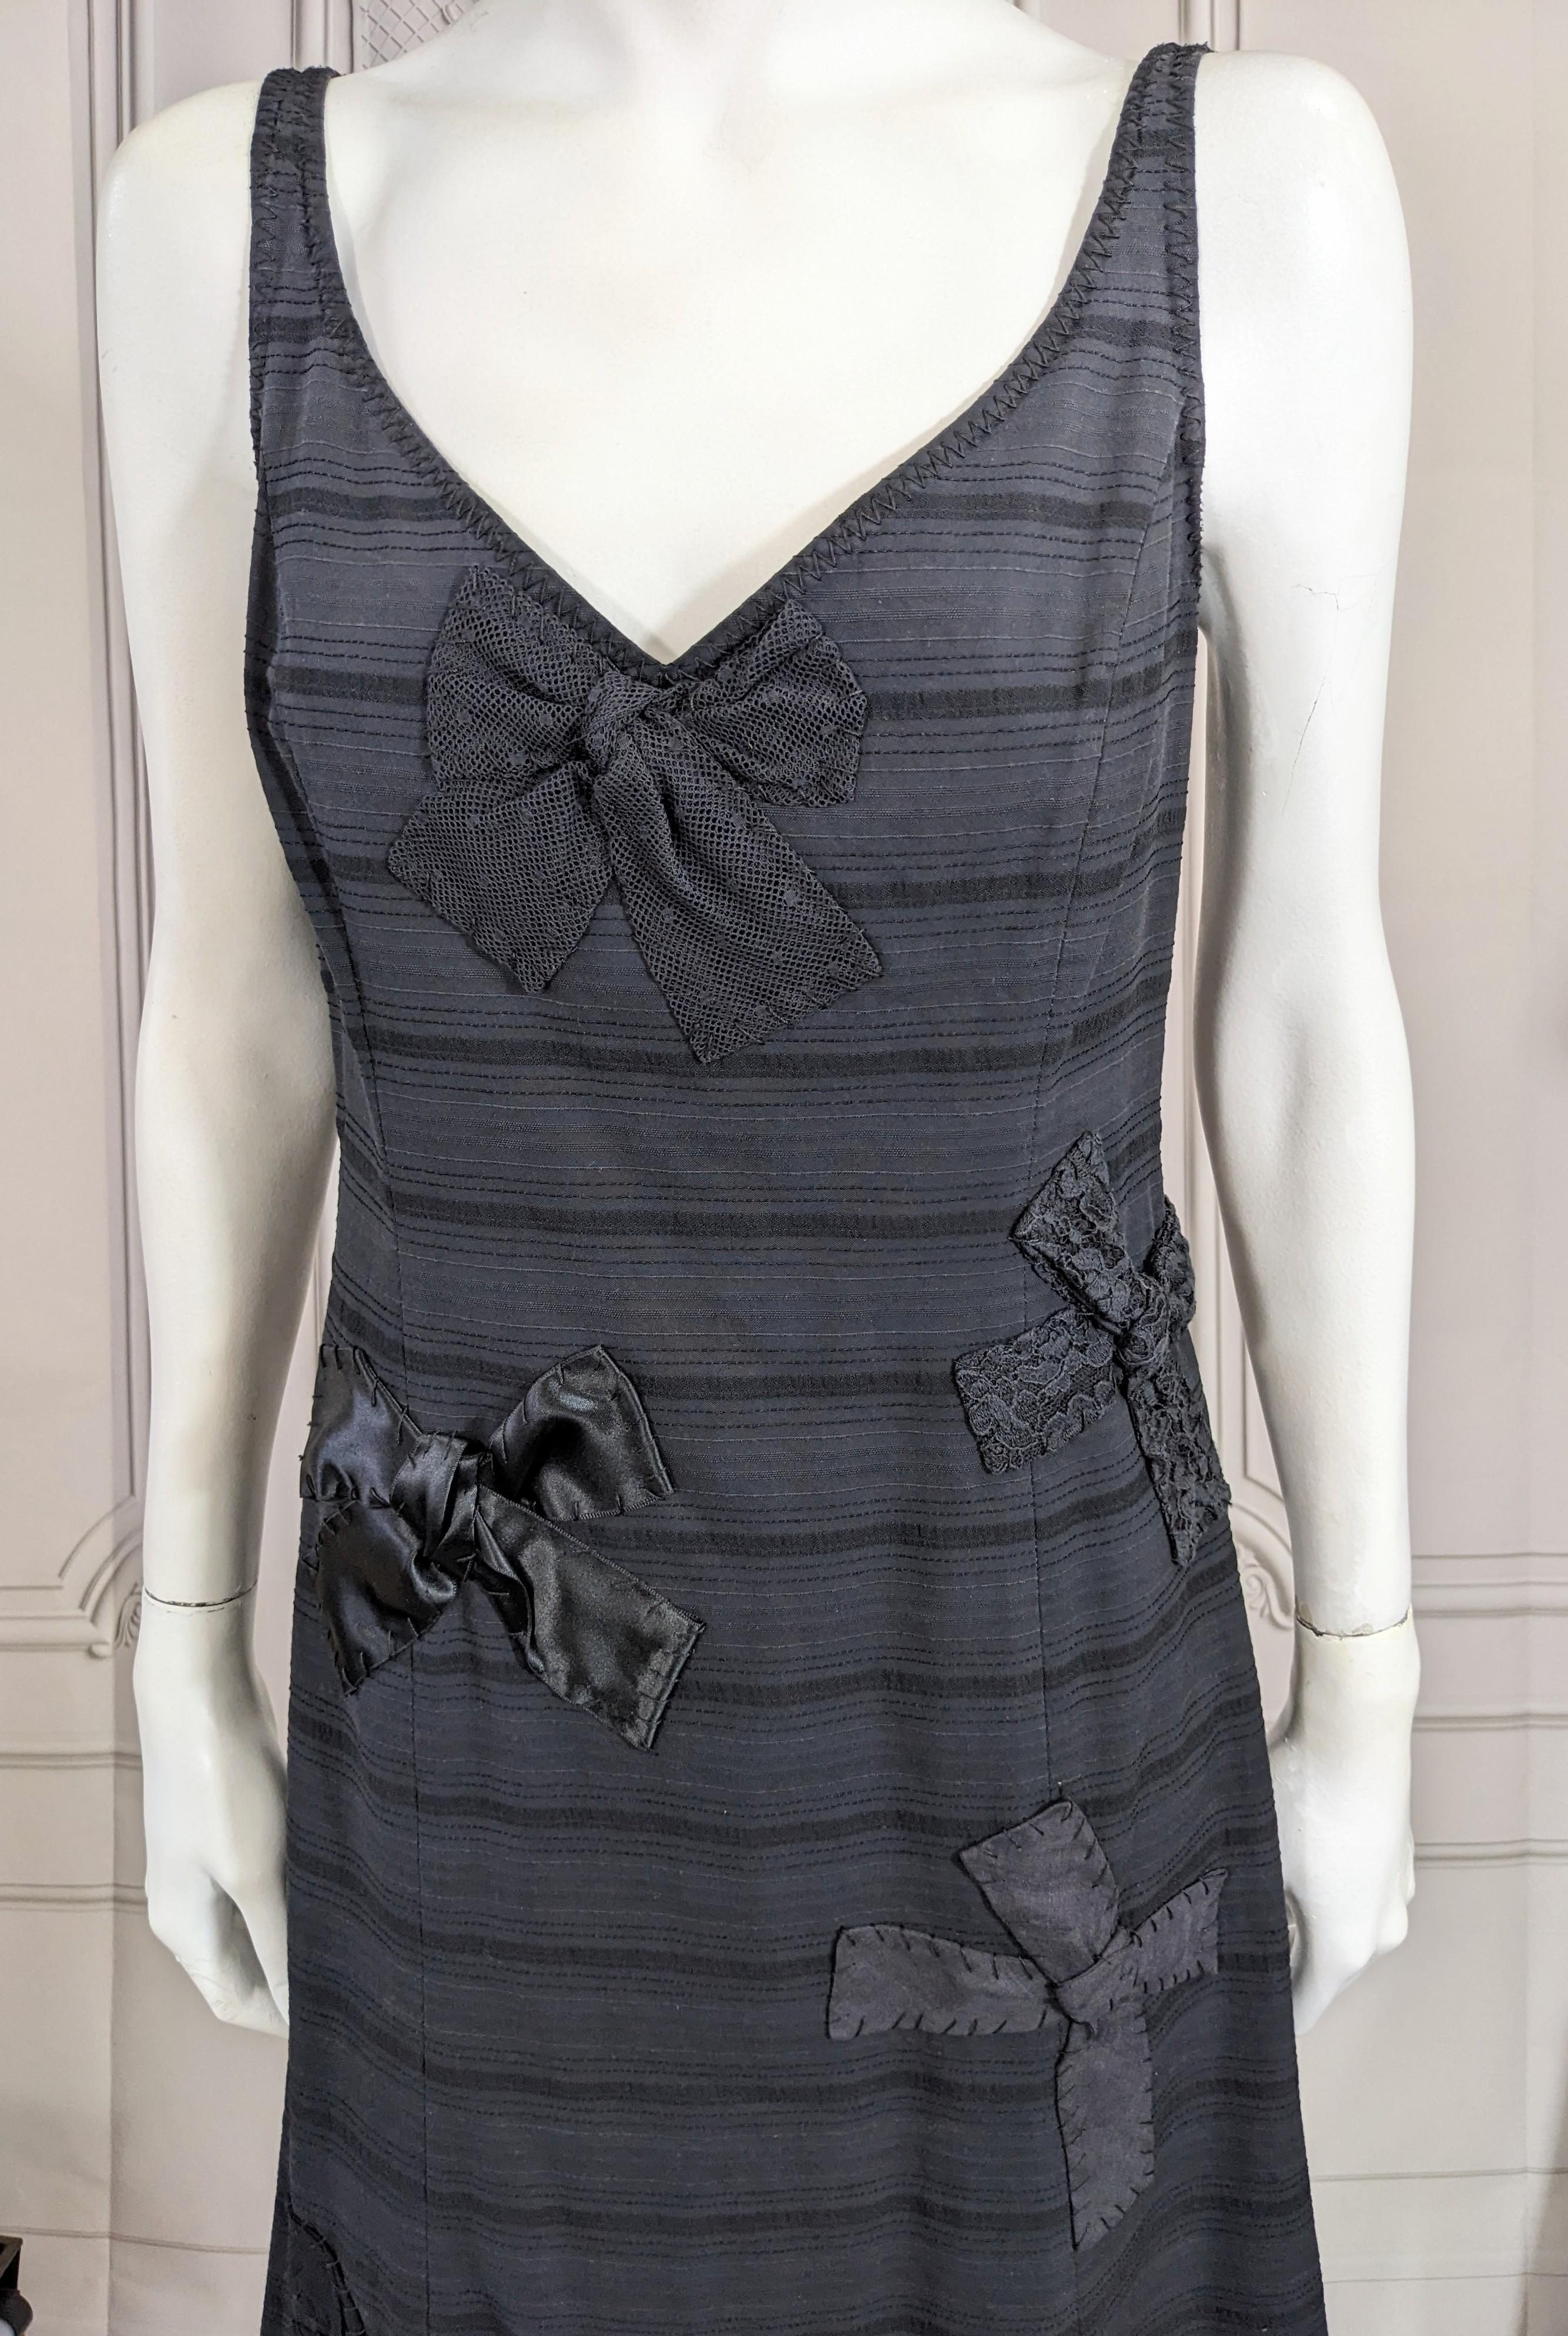 Moschino Baumwoll-Schleifenmotiv-Kleid mit einfachem, ausgestelltem Schnitt und Reißverschluss am Rücken. Schleifen aus verschiedenen Stoffen und Texturen sind auf den Körper des Kleides appliziert. Größe 8 USA. 1990er Jahre Italien. 